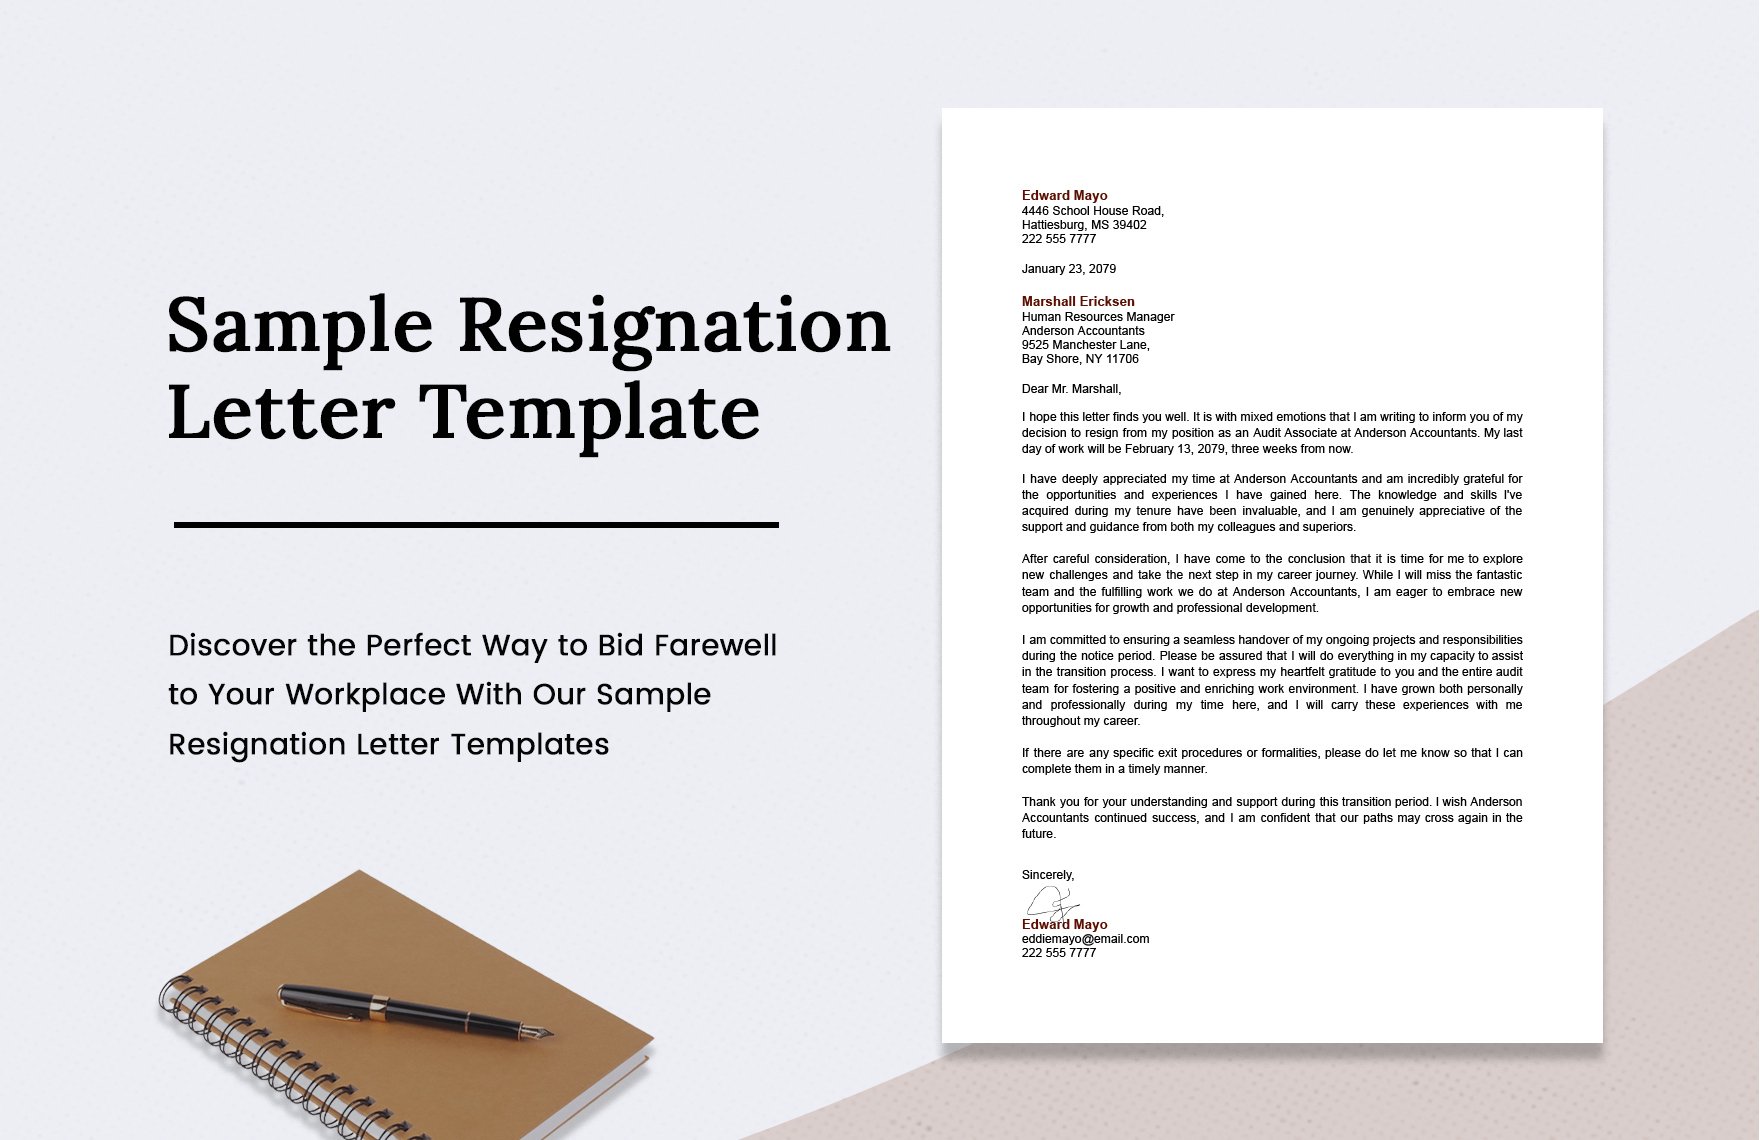    Sample Resignation Letter